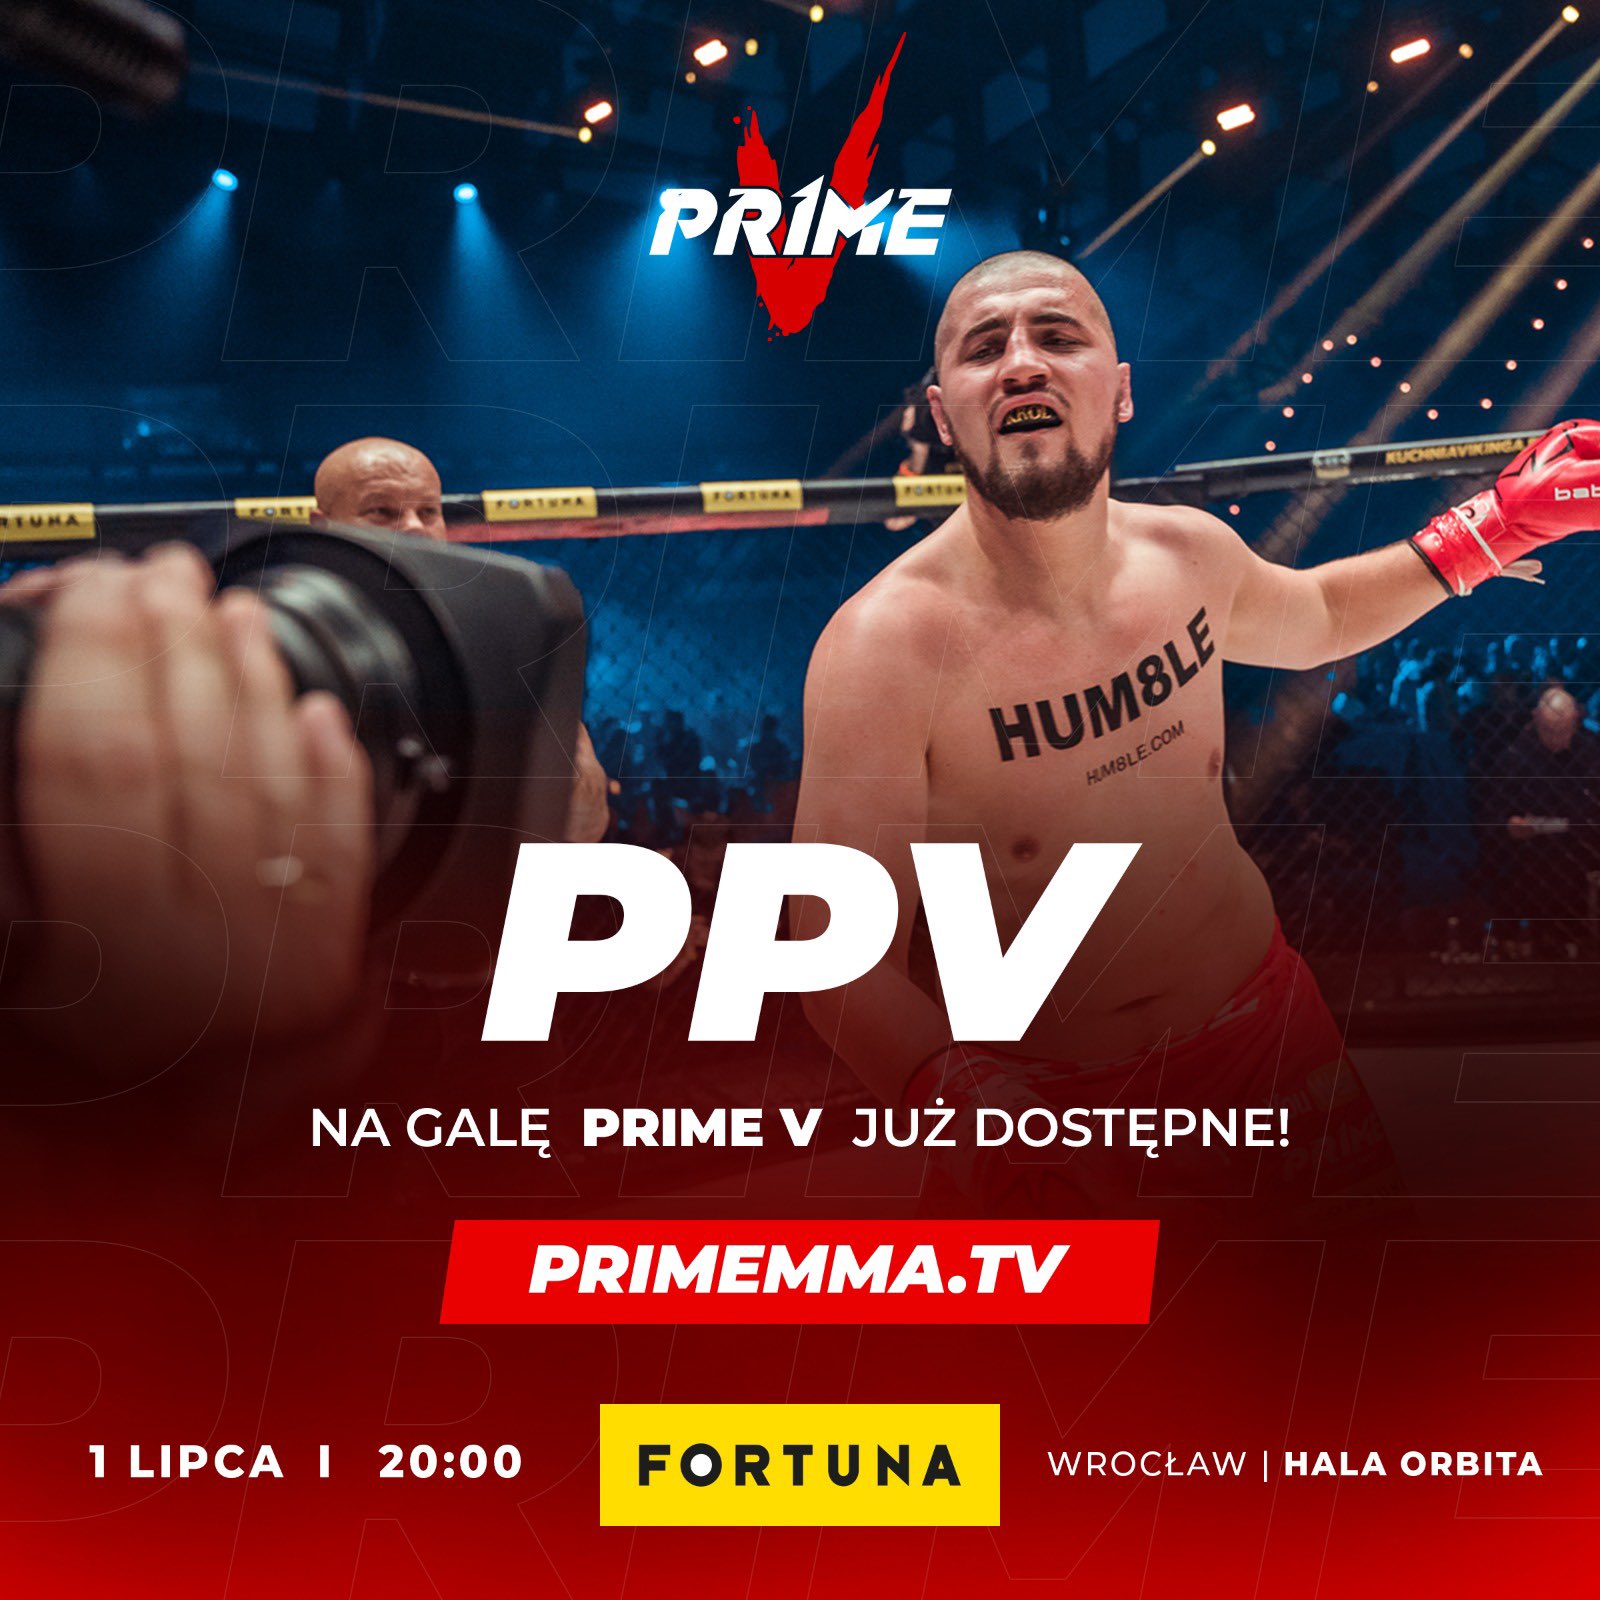 Prime MMA 5 w PPV